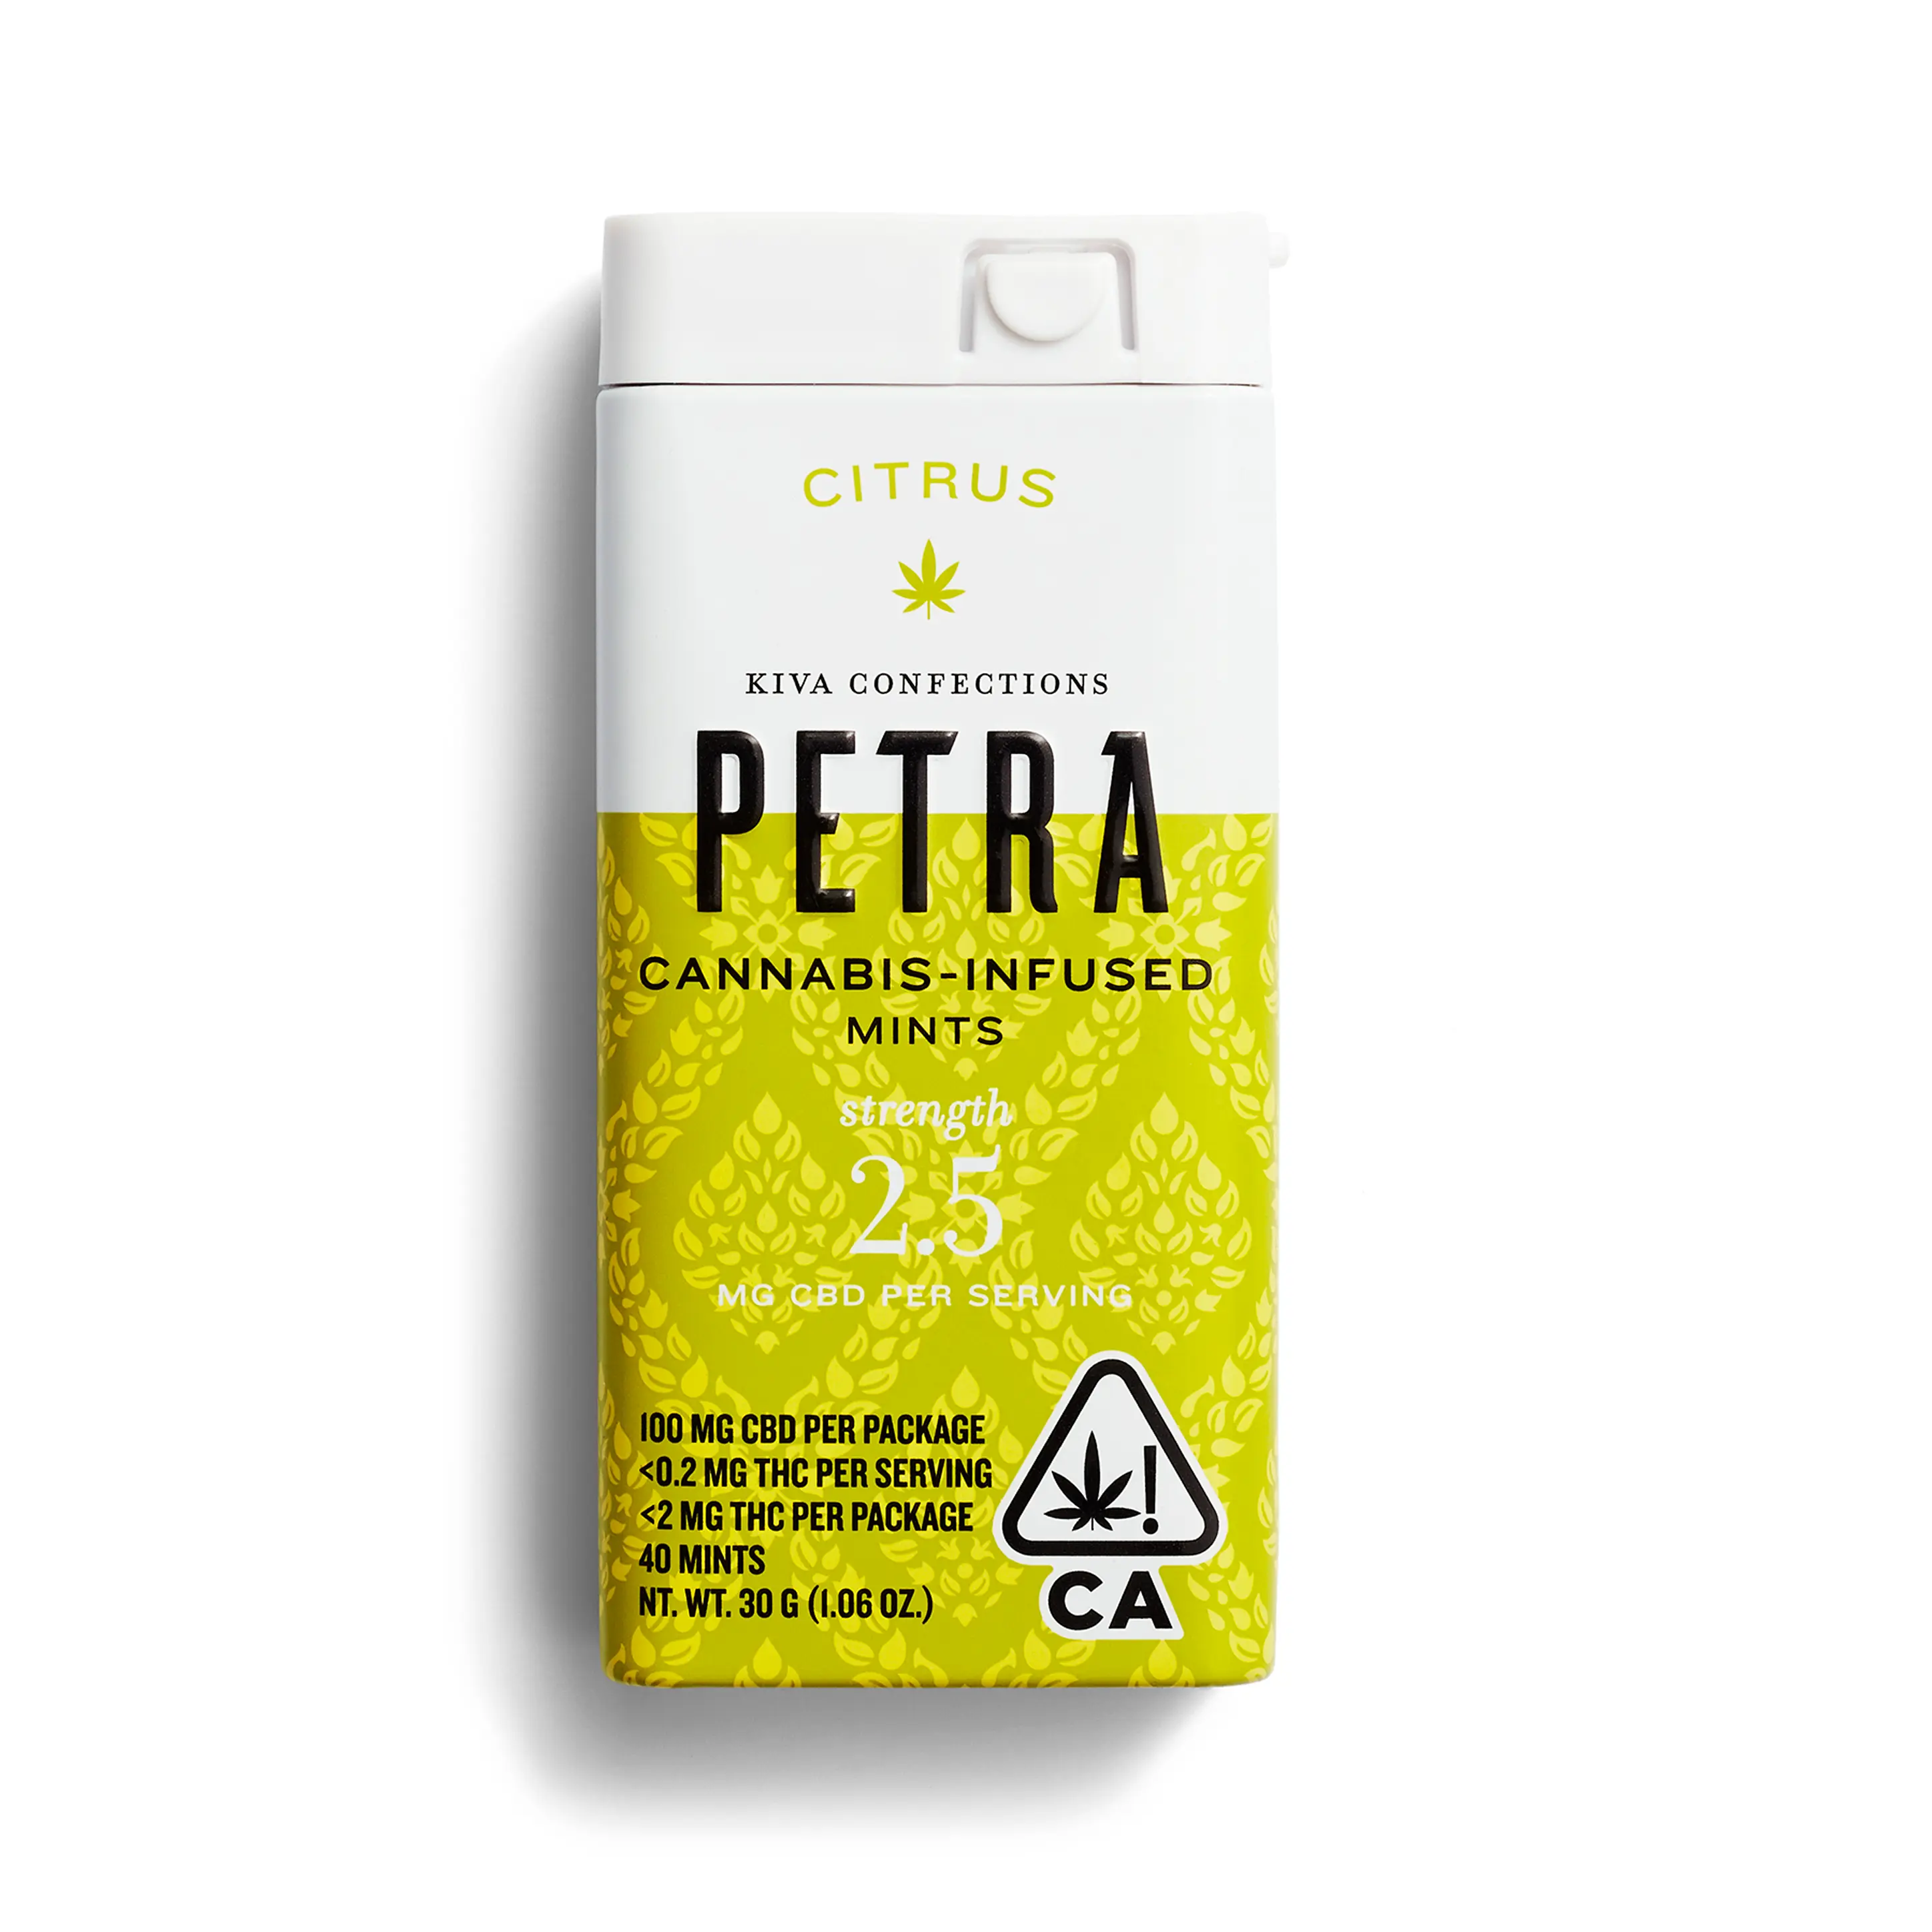 product preview image for Petra CBD Citrus Mints